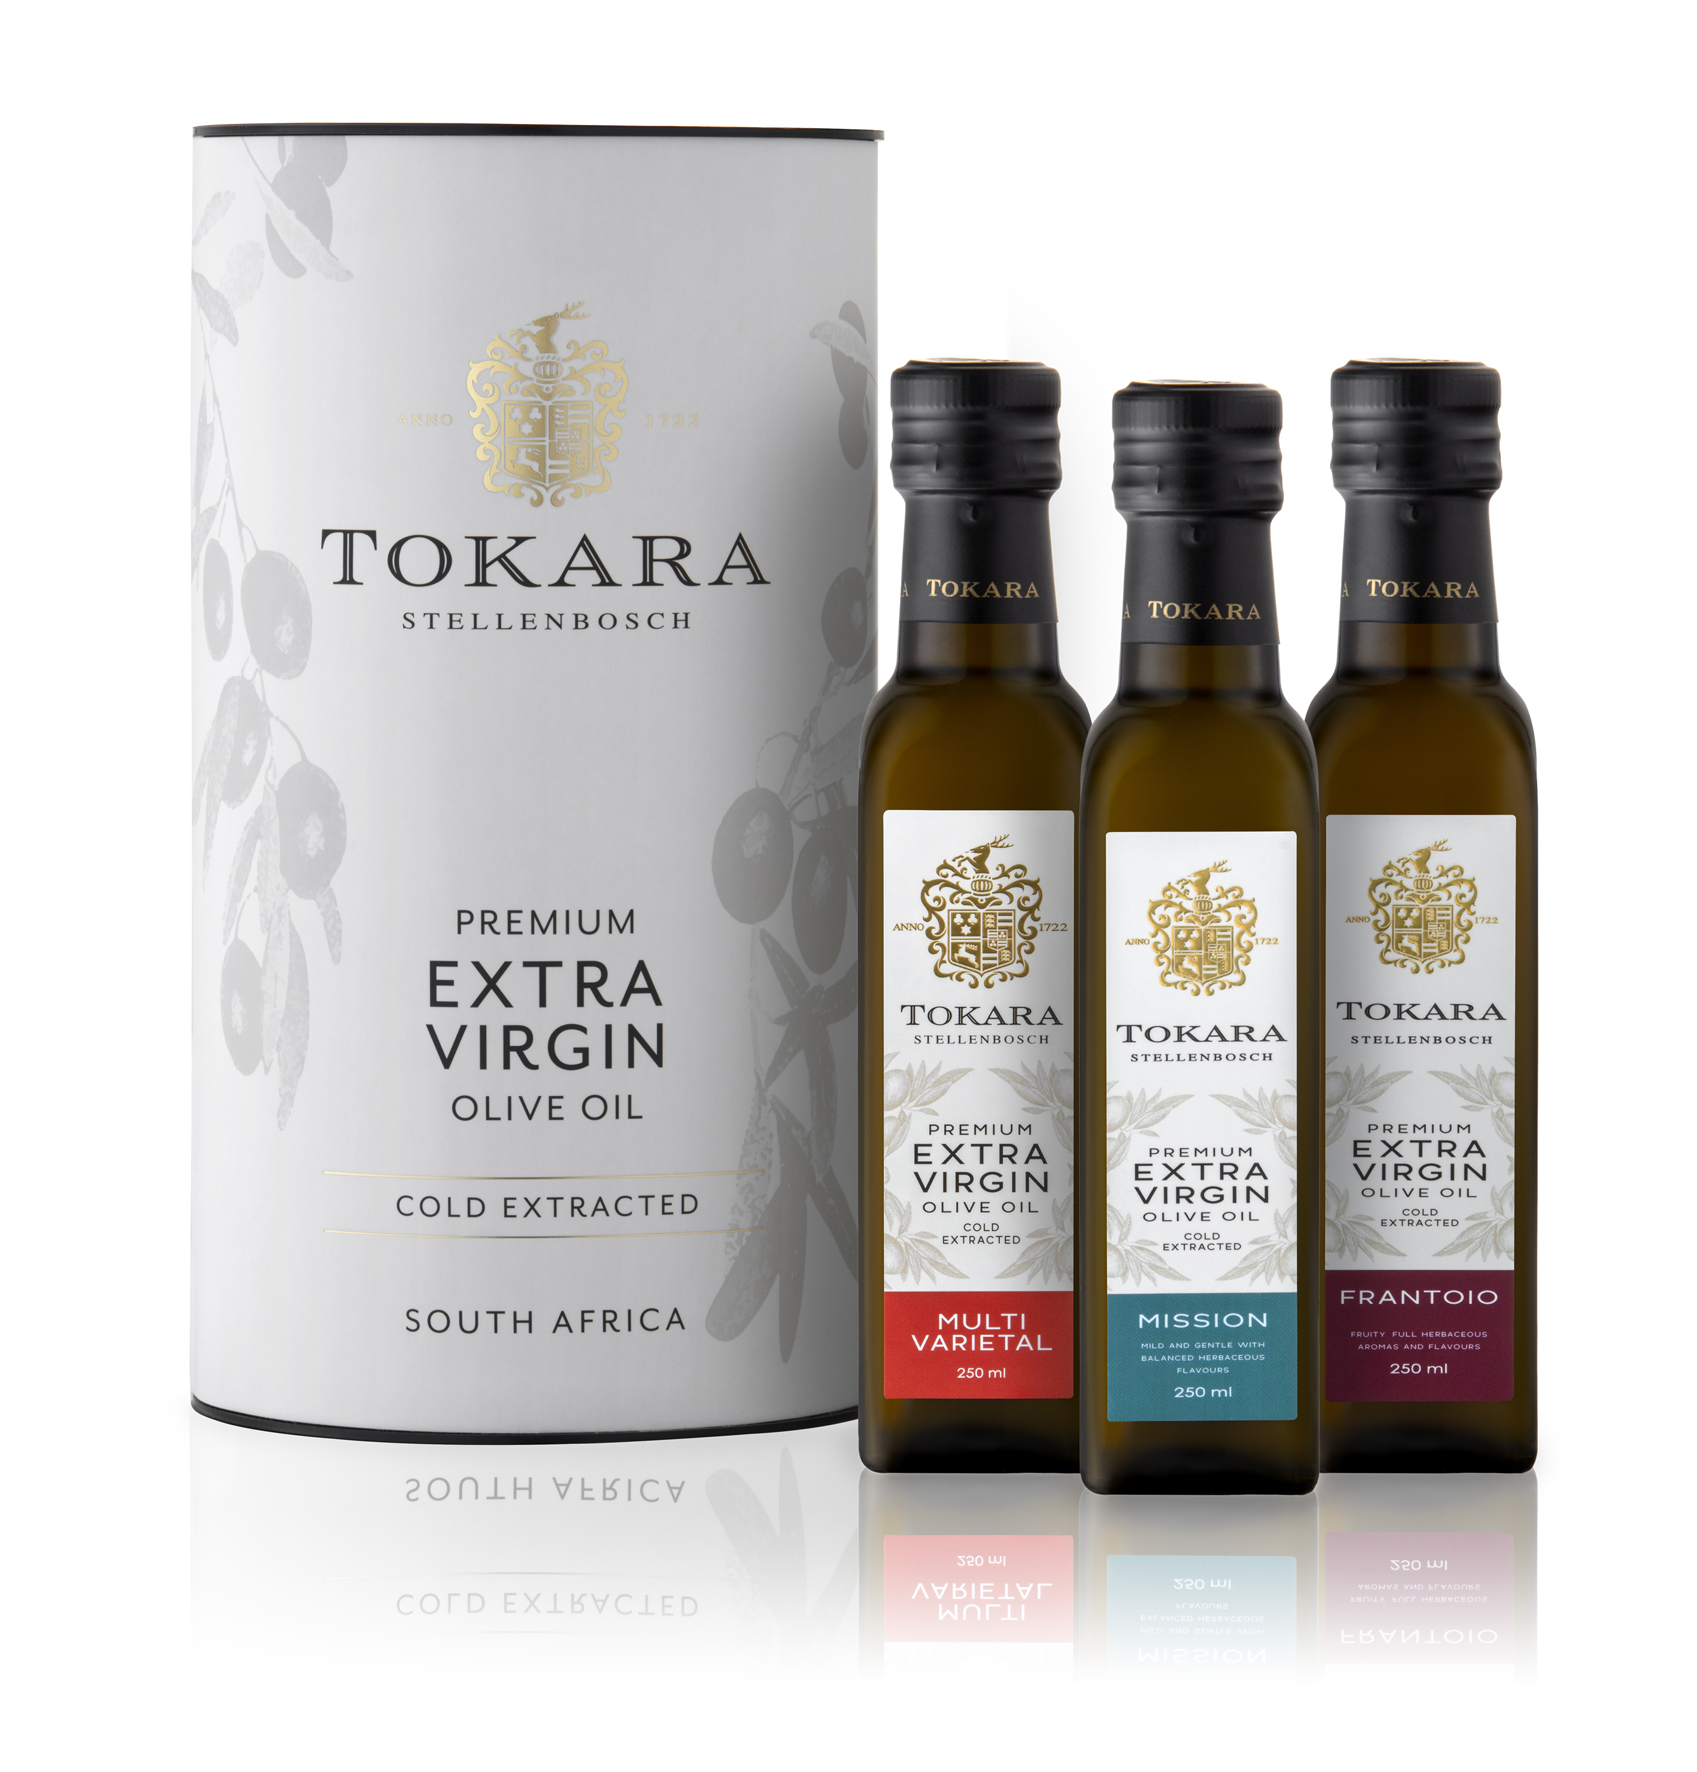 TOKARA gold medal-winning extra virgin olive oil sonia cabano blog eatdrinkcapetown 